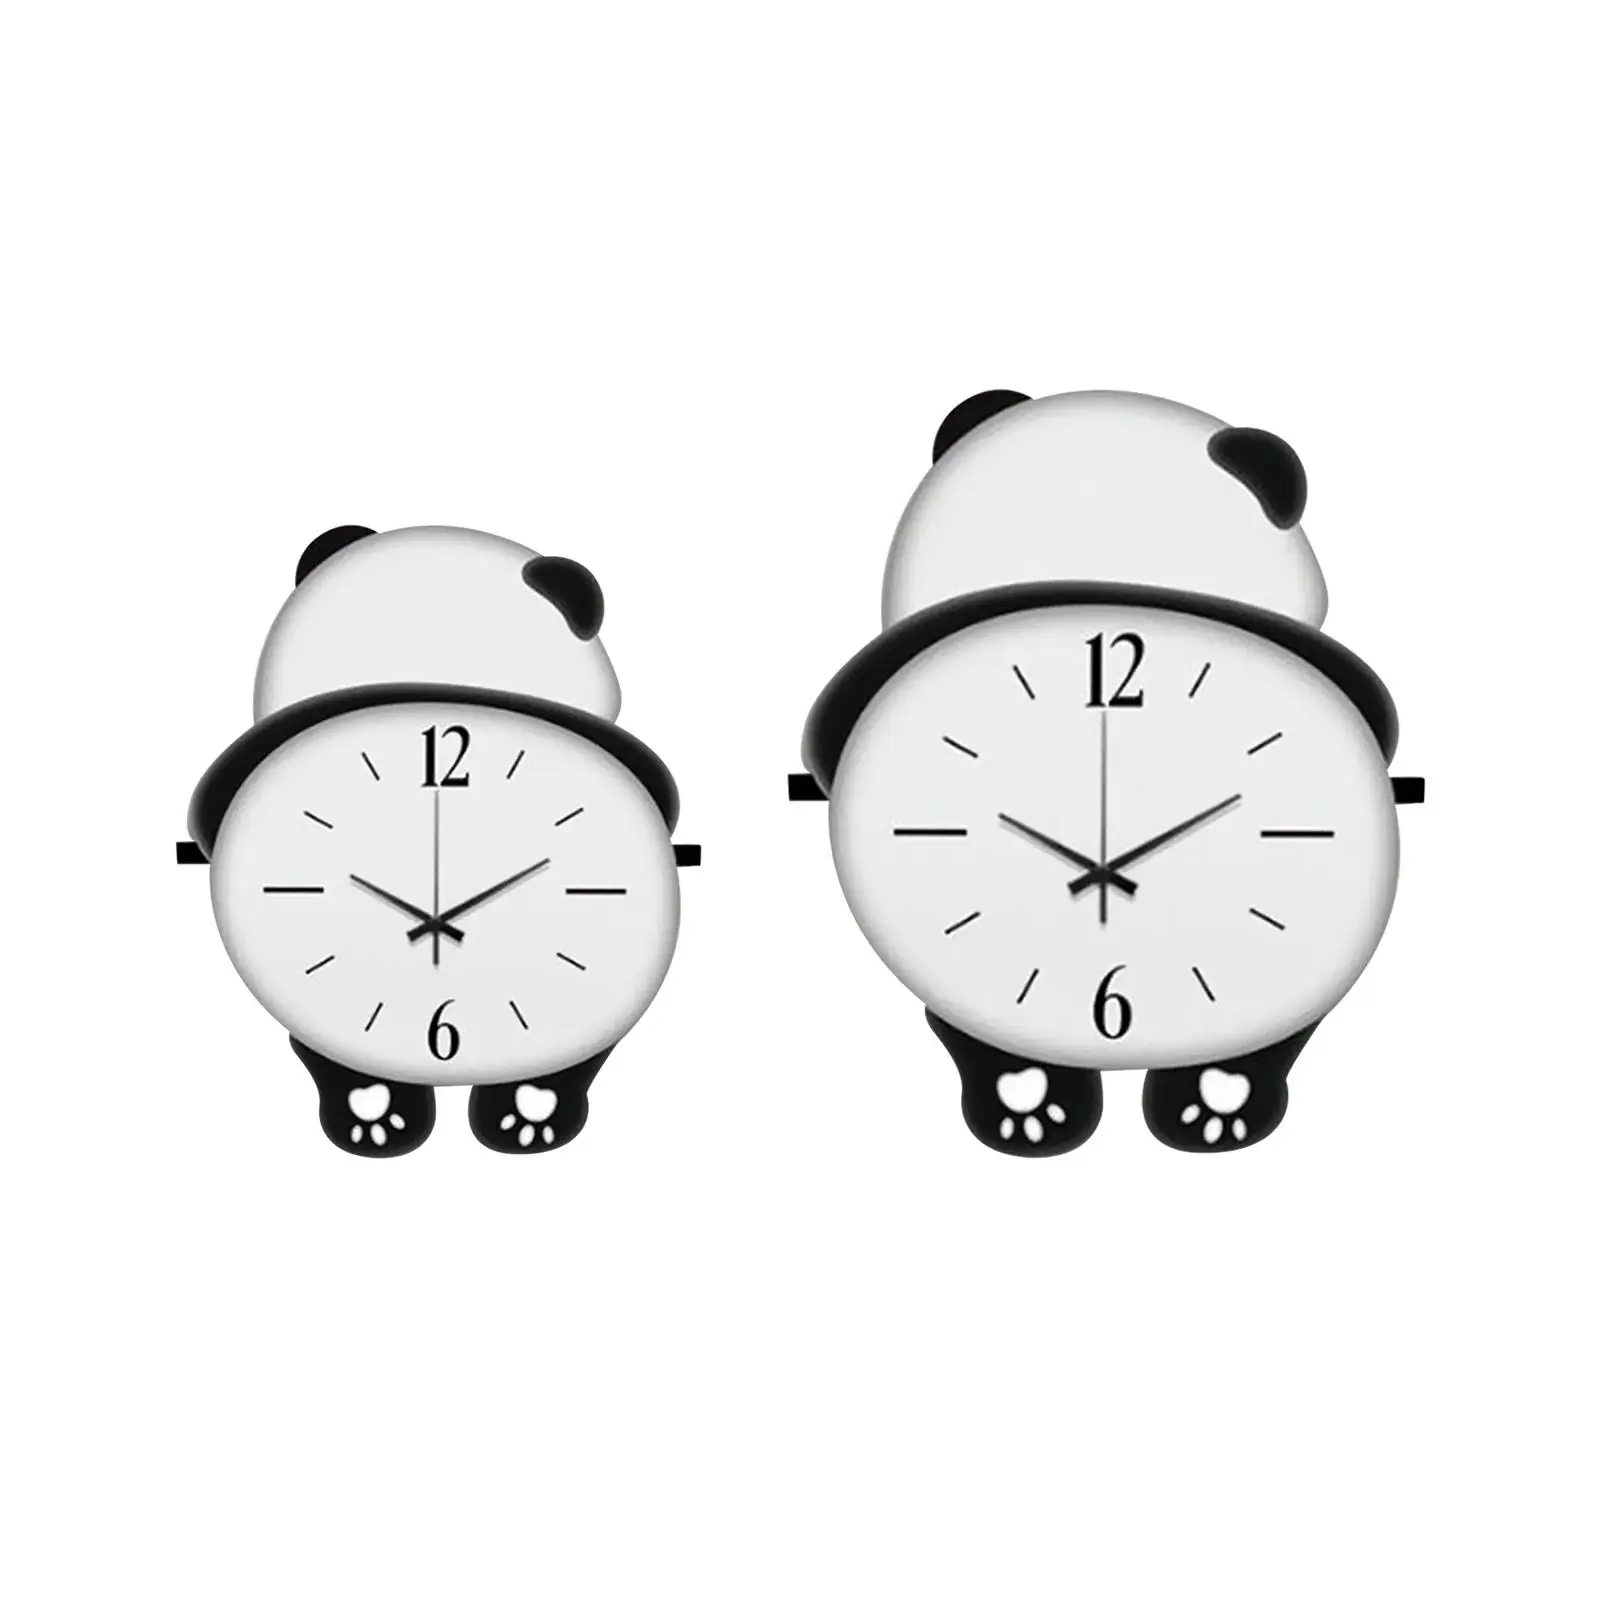 Wood Panda Wall Clock Wall Art Decor Battery Operated Hanging Clock Cute for Farmhouse Versatile